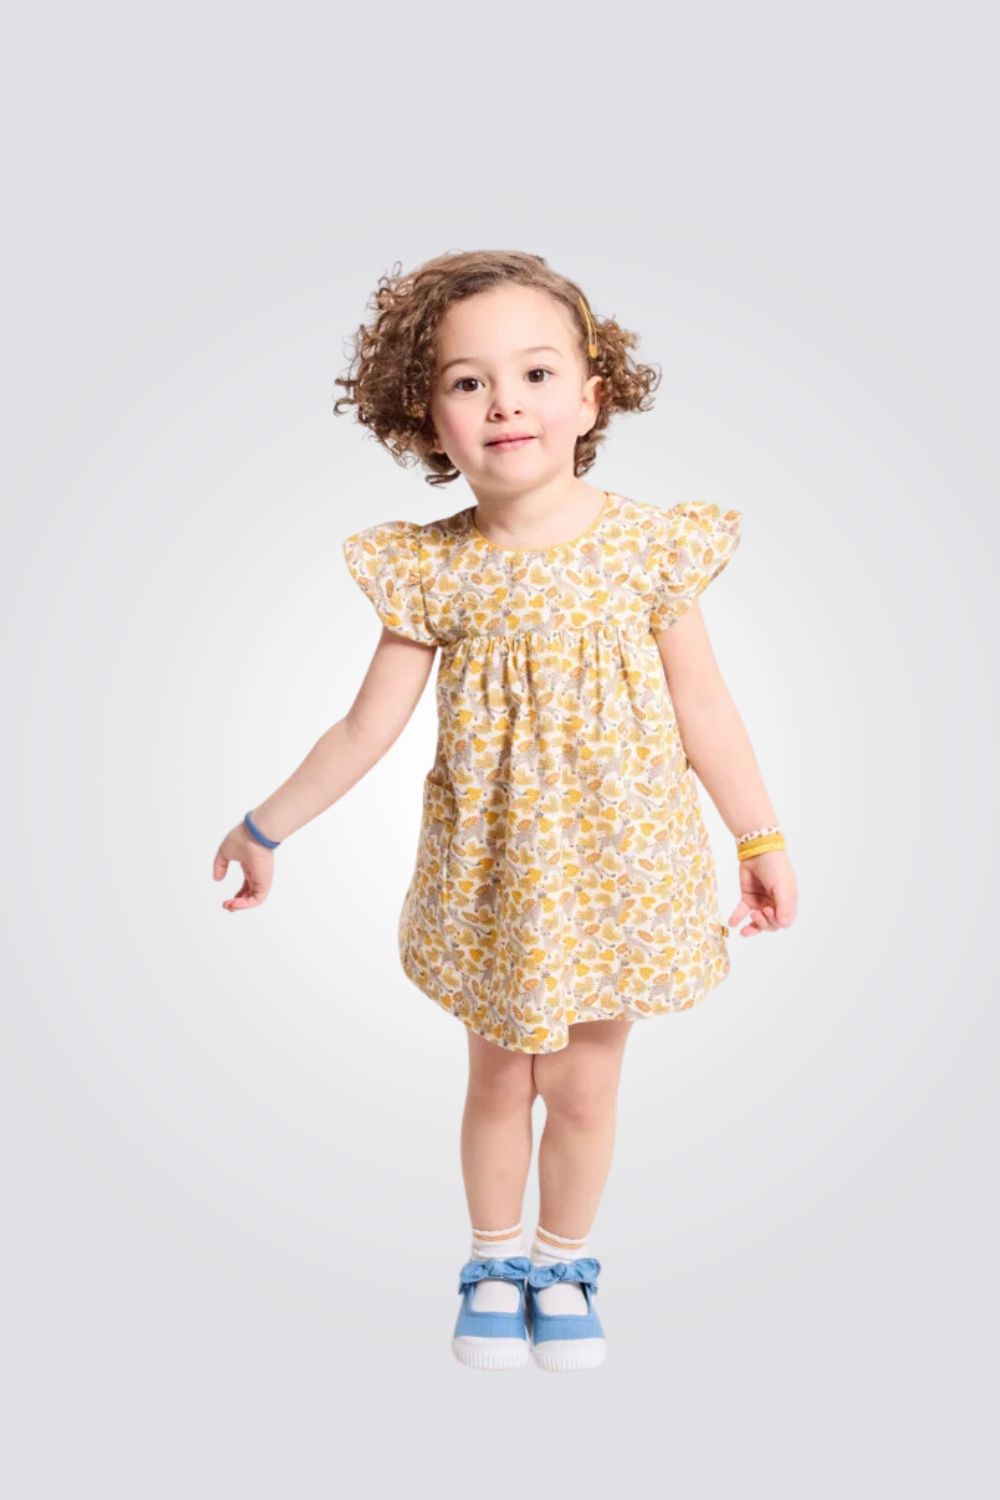 שמלה לתינוקות בצבע צהוב עם הדפס חיות